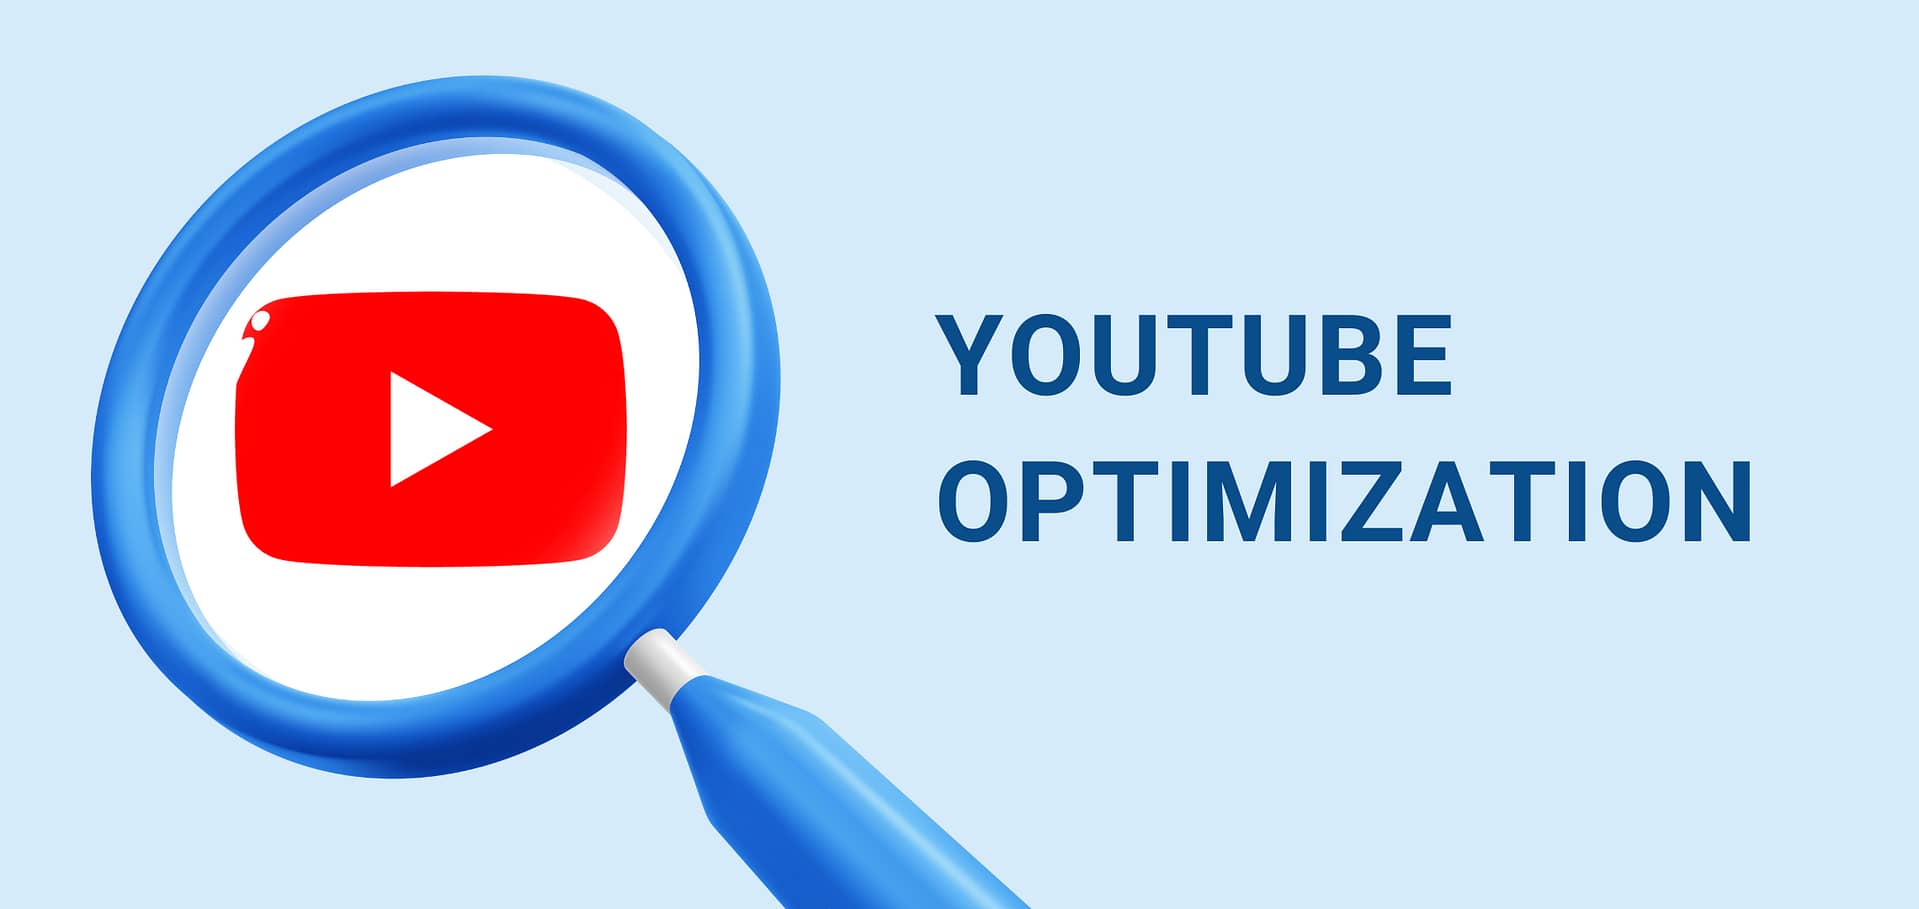 YouTube Optimization